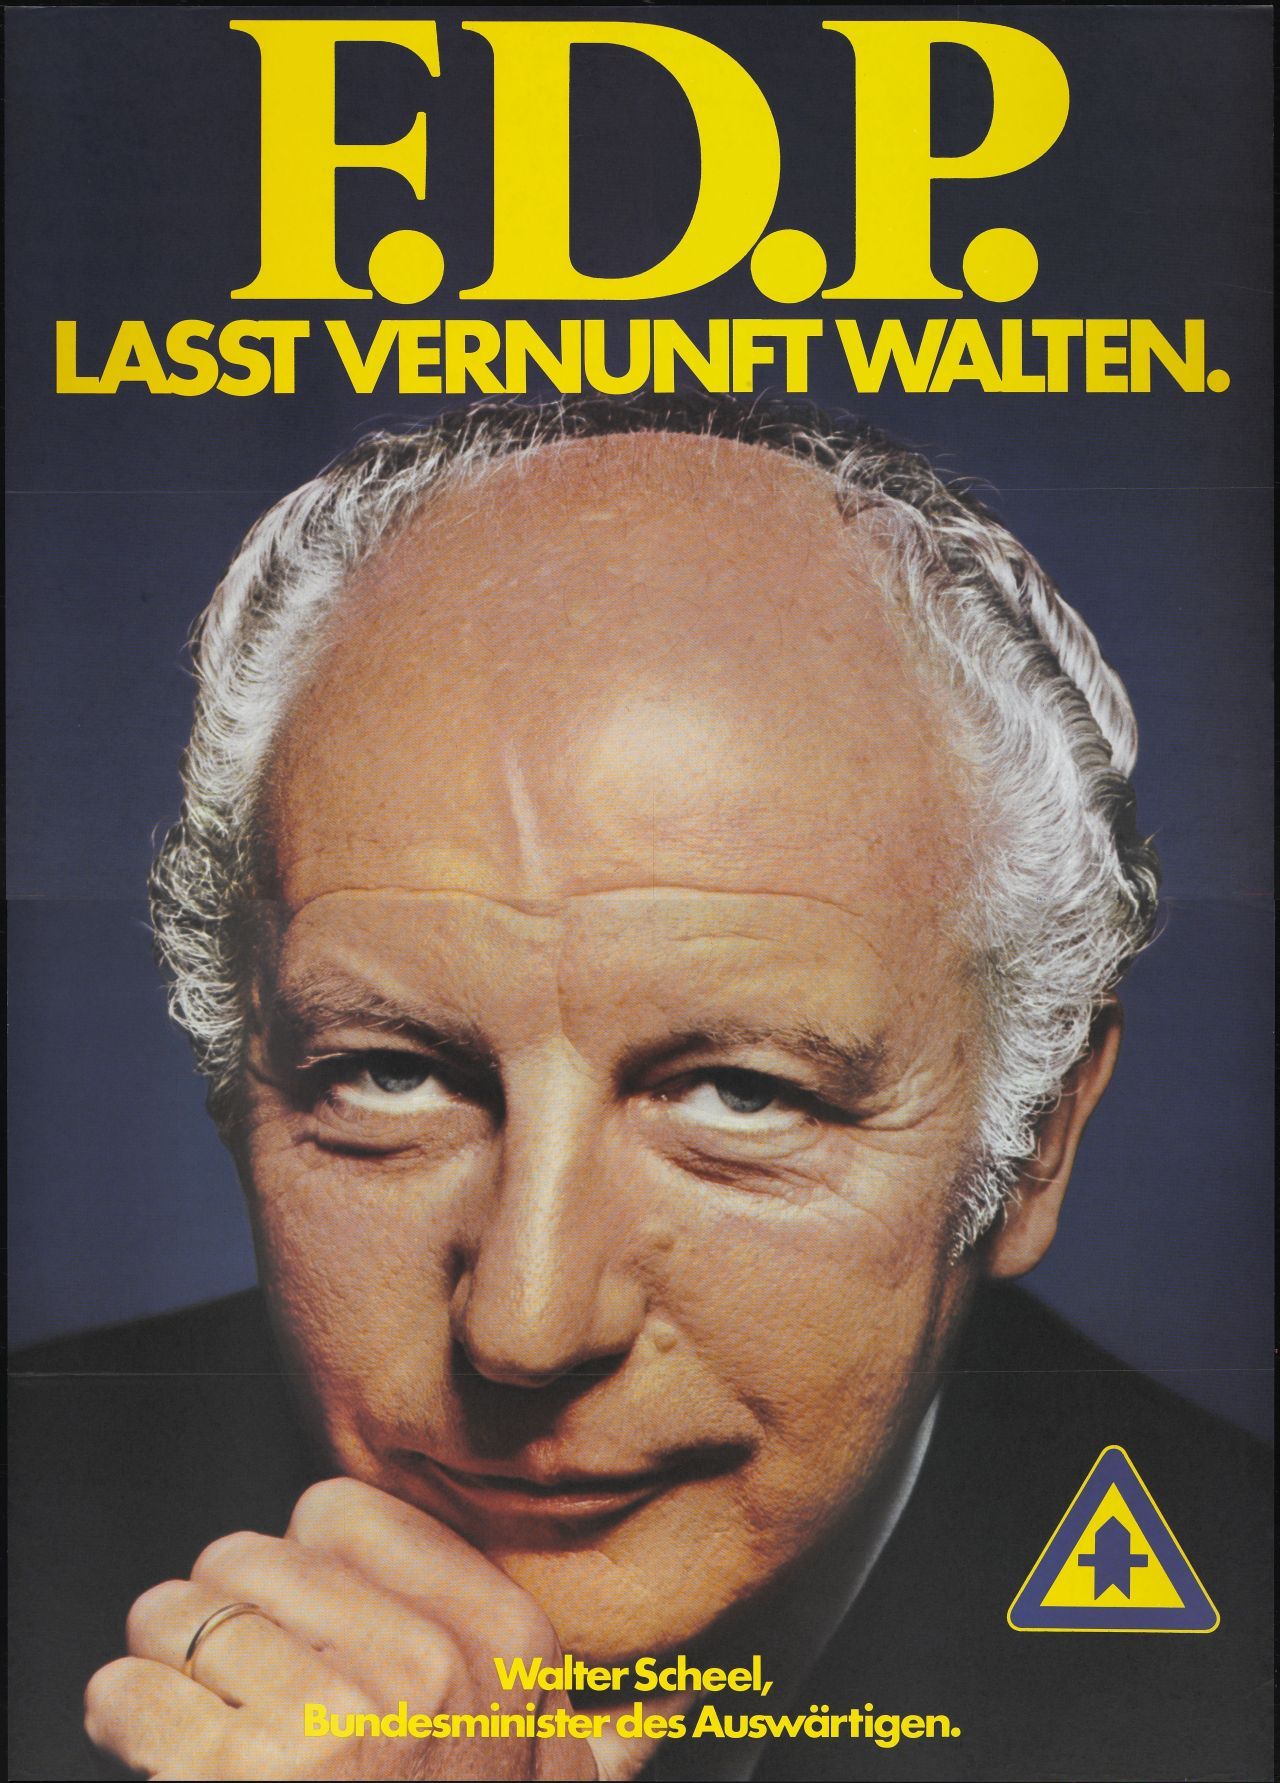 Lasst Vernunft walten - FDP.
Wahlplakat der FDP zur Bundestagswahl mit dem Konterfei von Walter Scheel, Bundesminister des Auswärtigen, 1972.